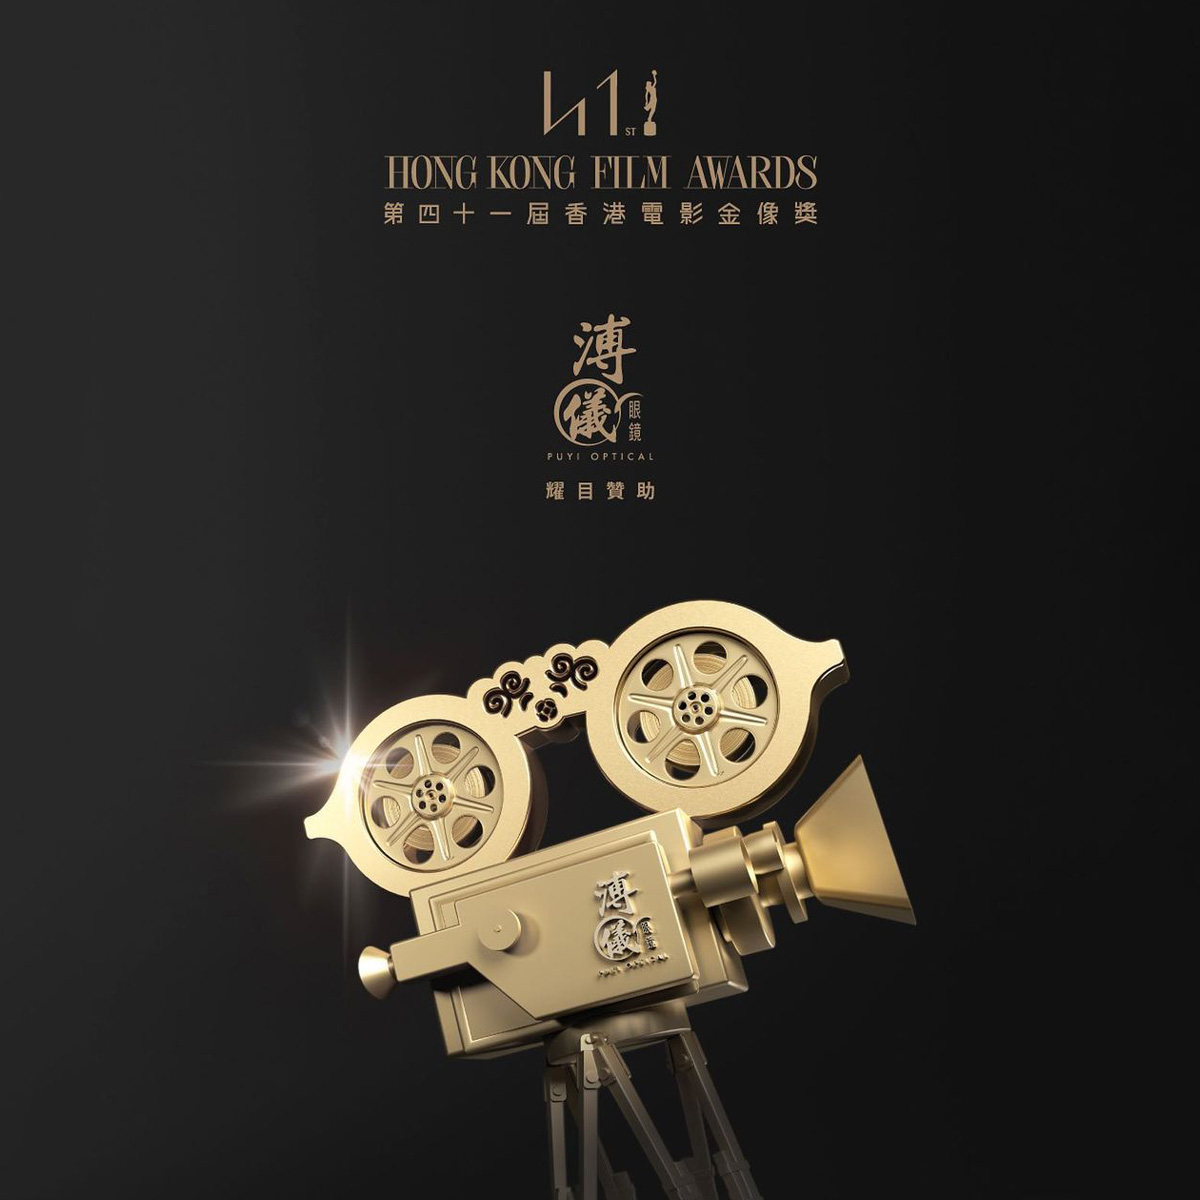 溥仪眼镜耀目赞助「第41届香港电影金像奖」